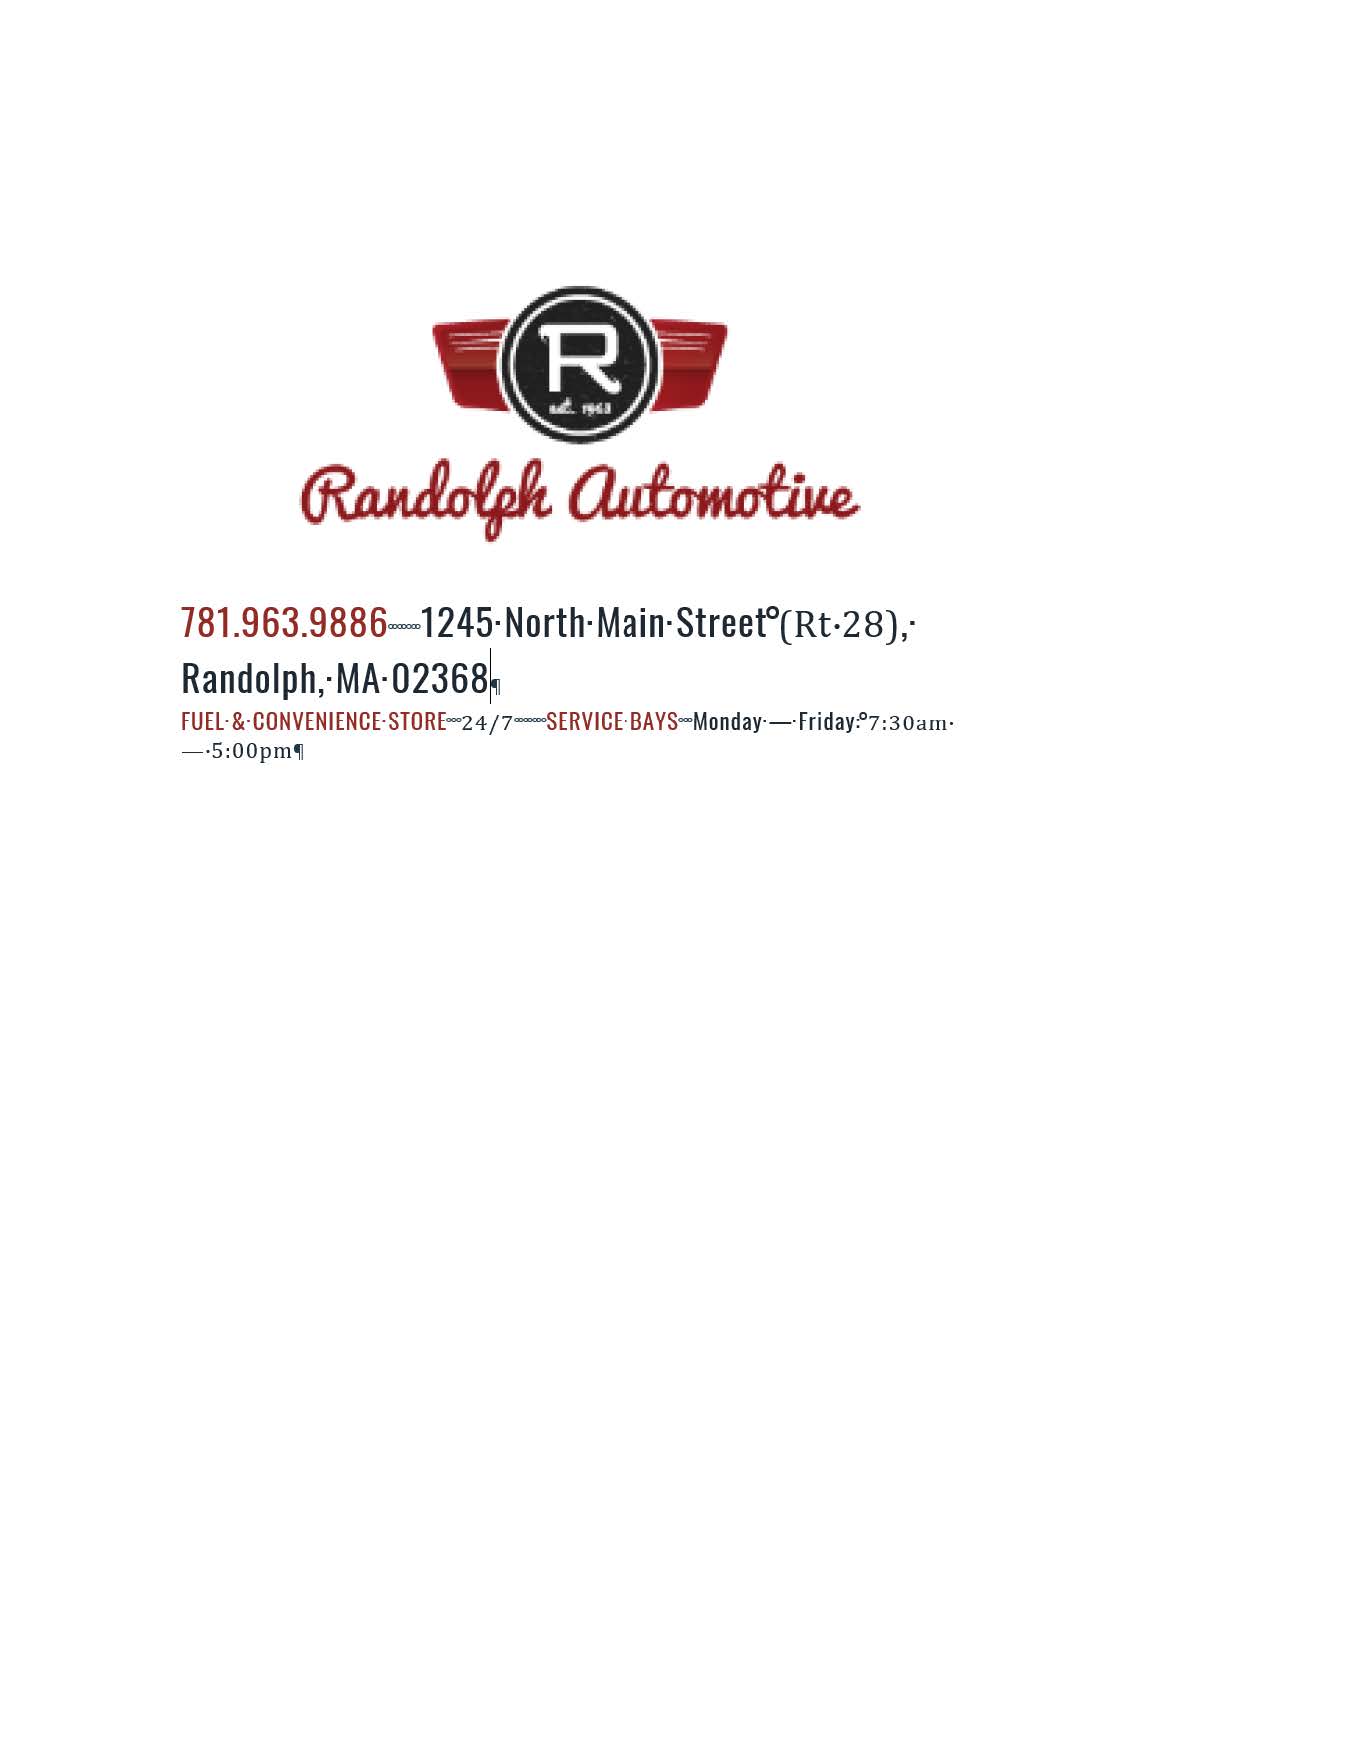 Randolph Automotive